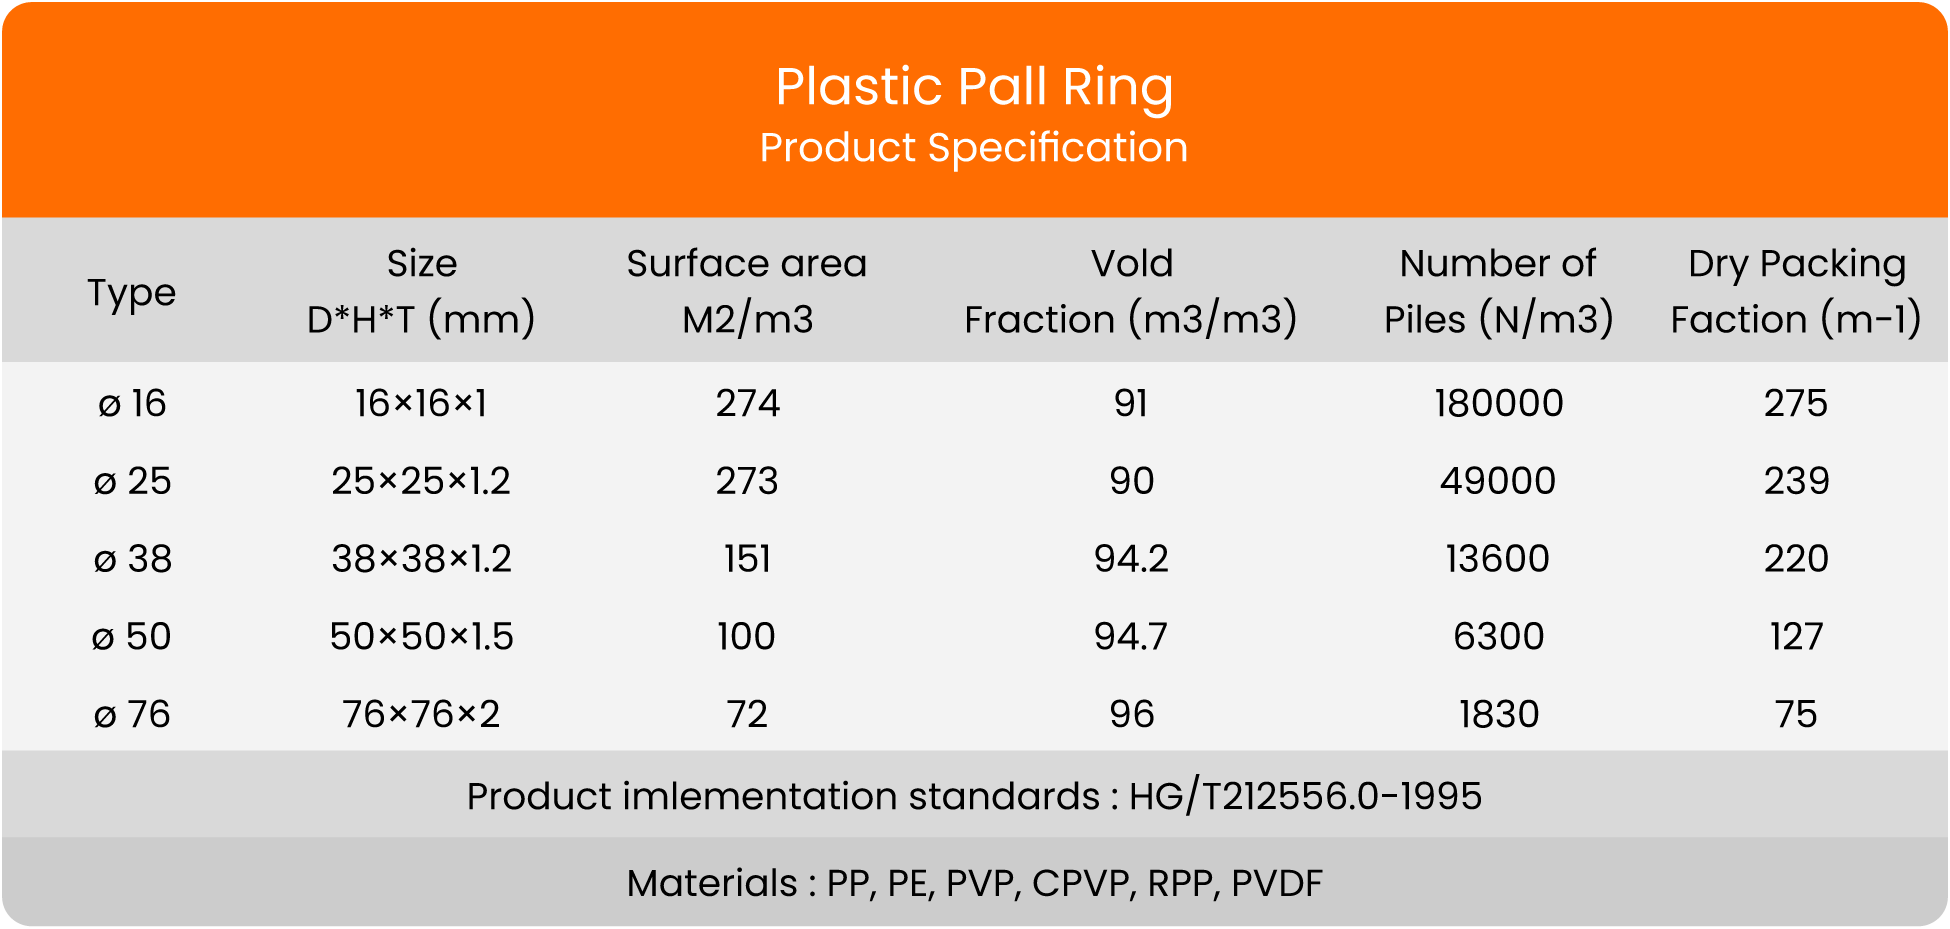 Plastic Pall Ring Biomedia Spec biomedia